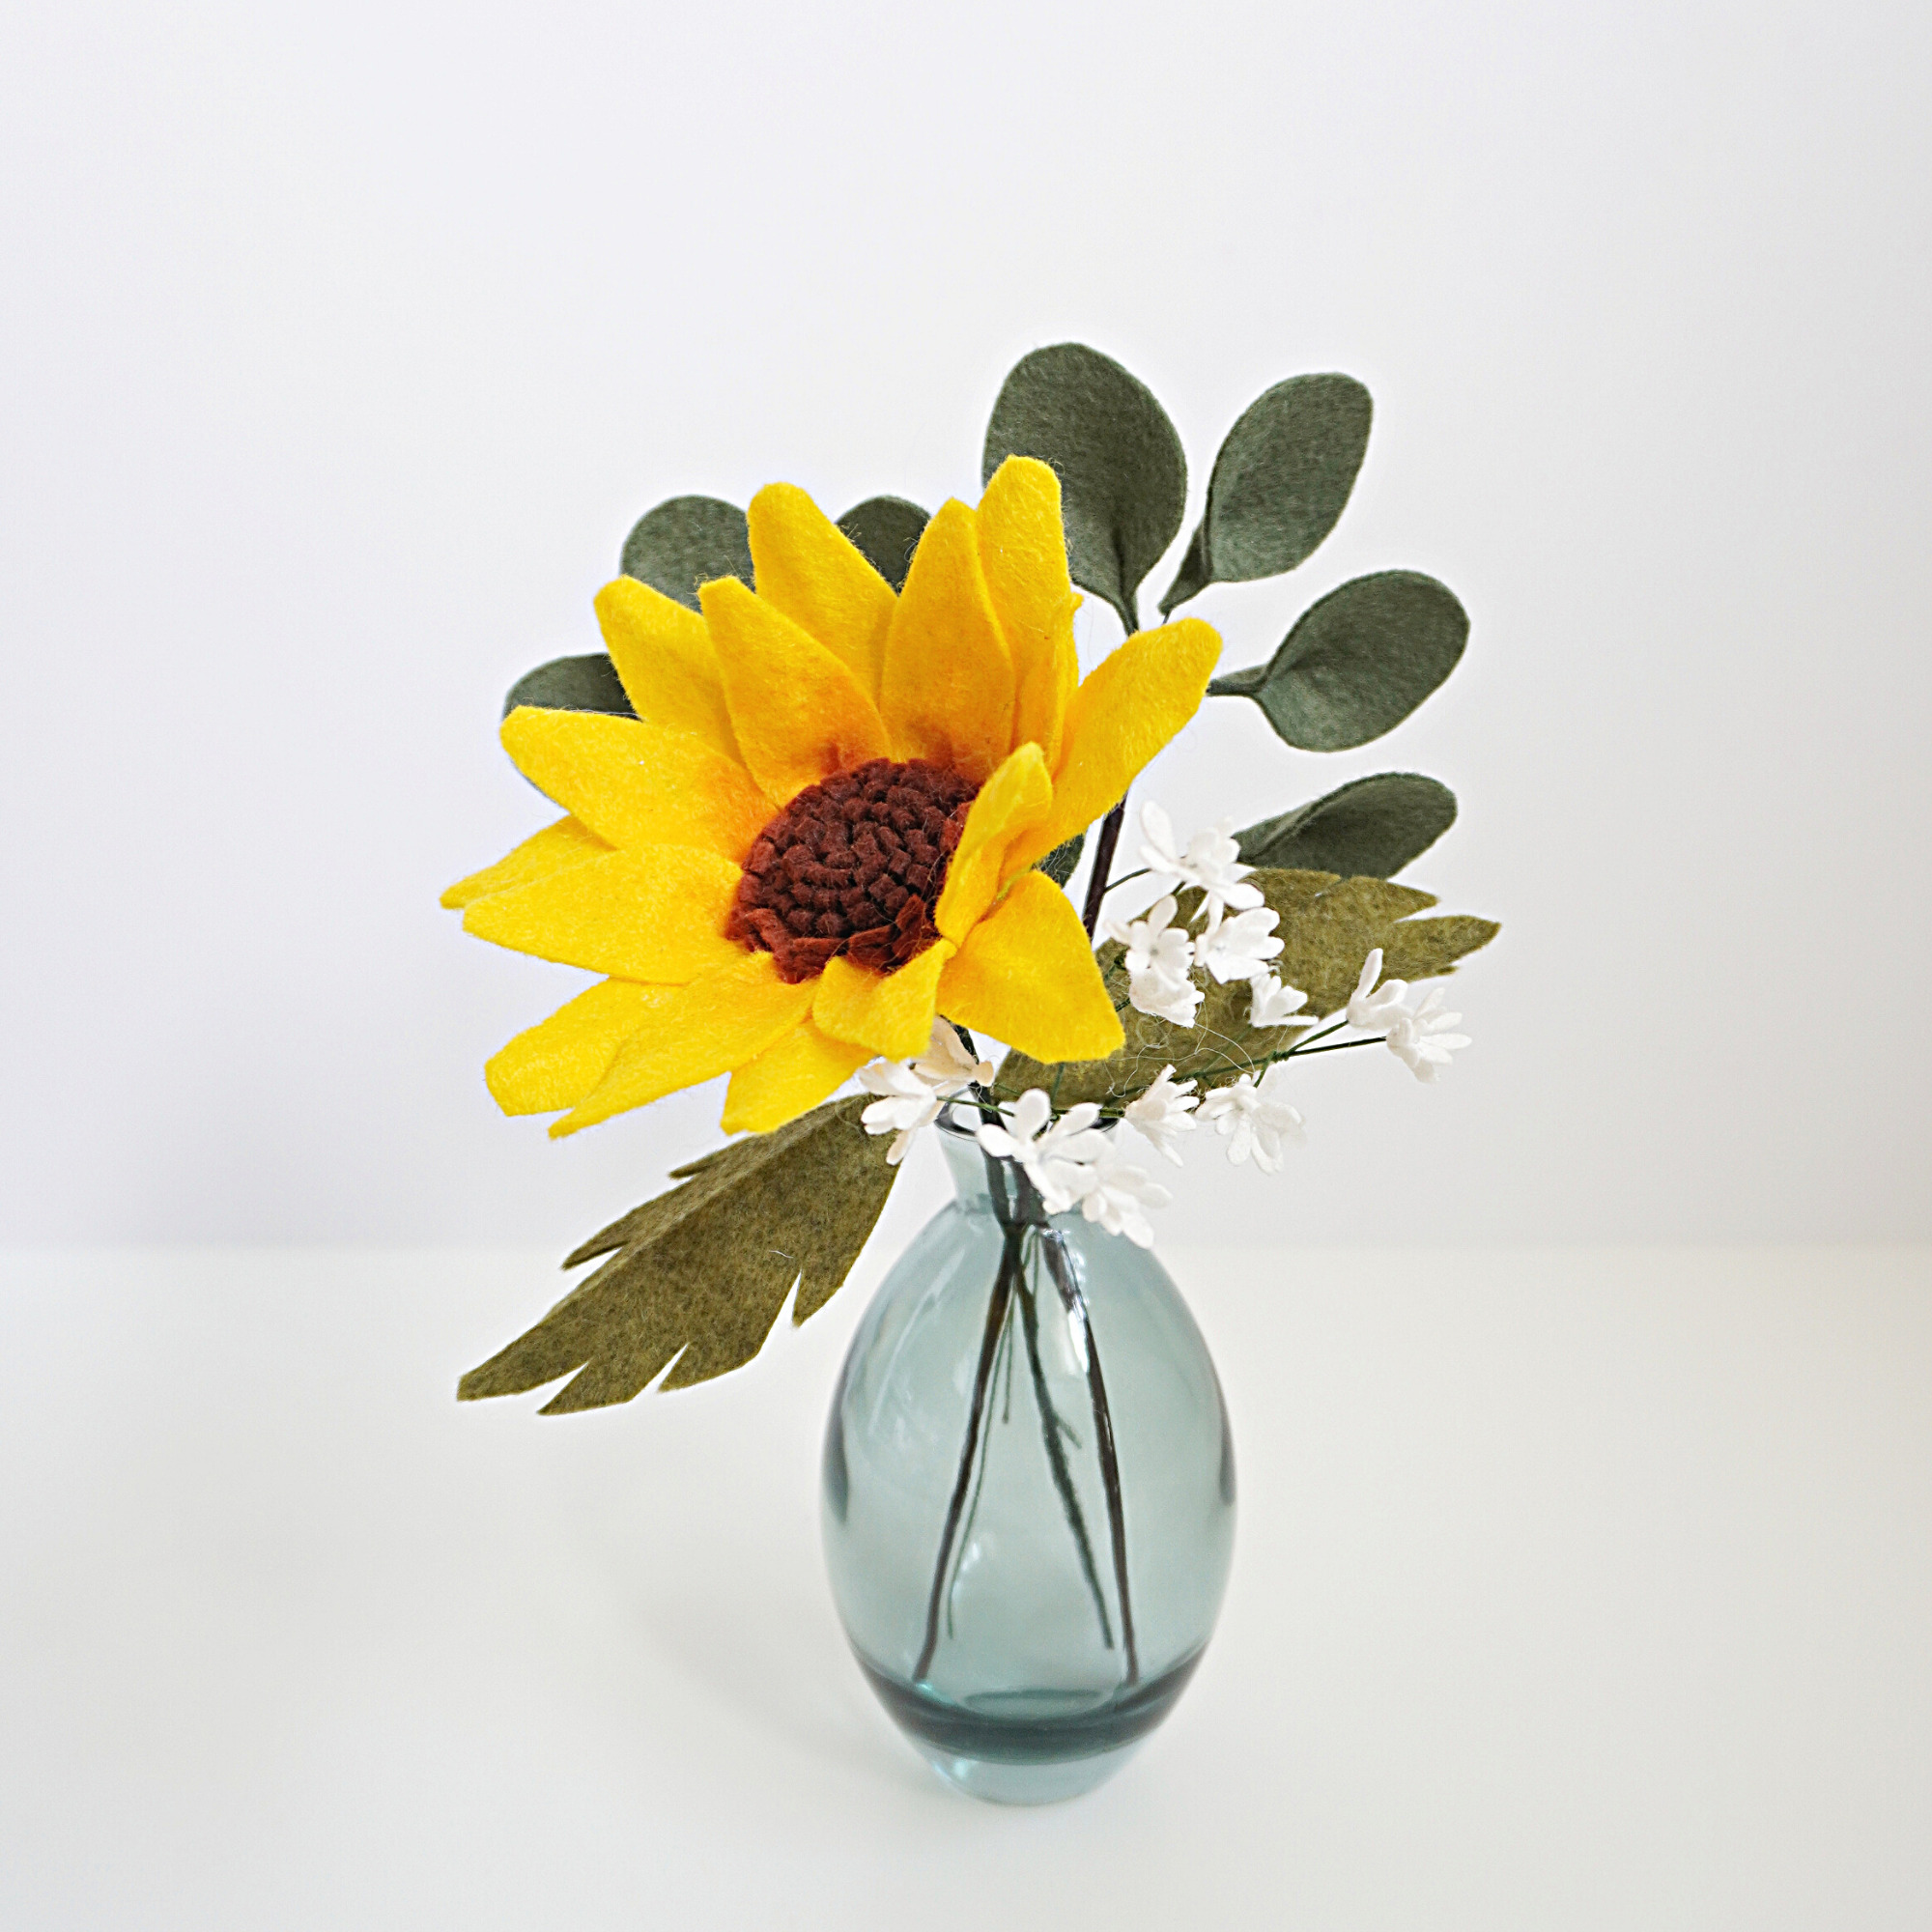 Sunflower bouquet in vase